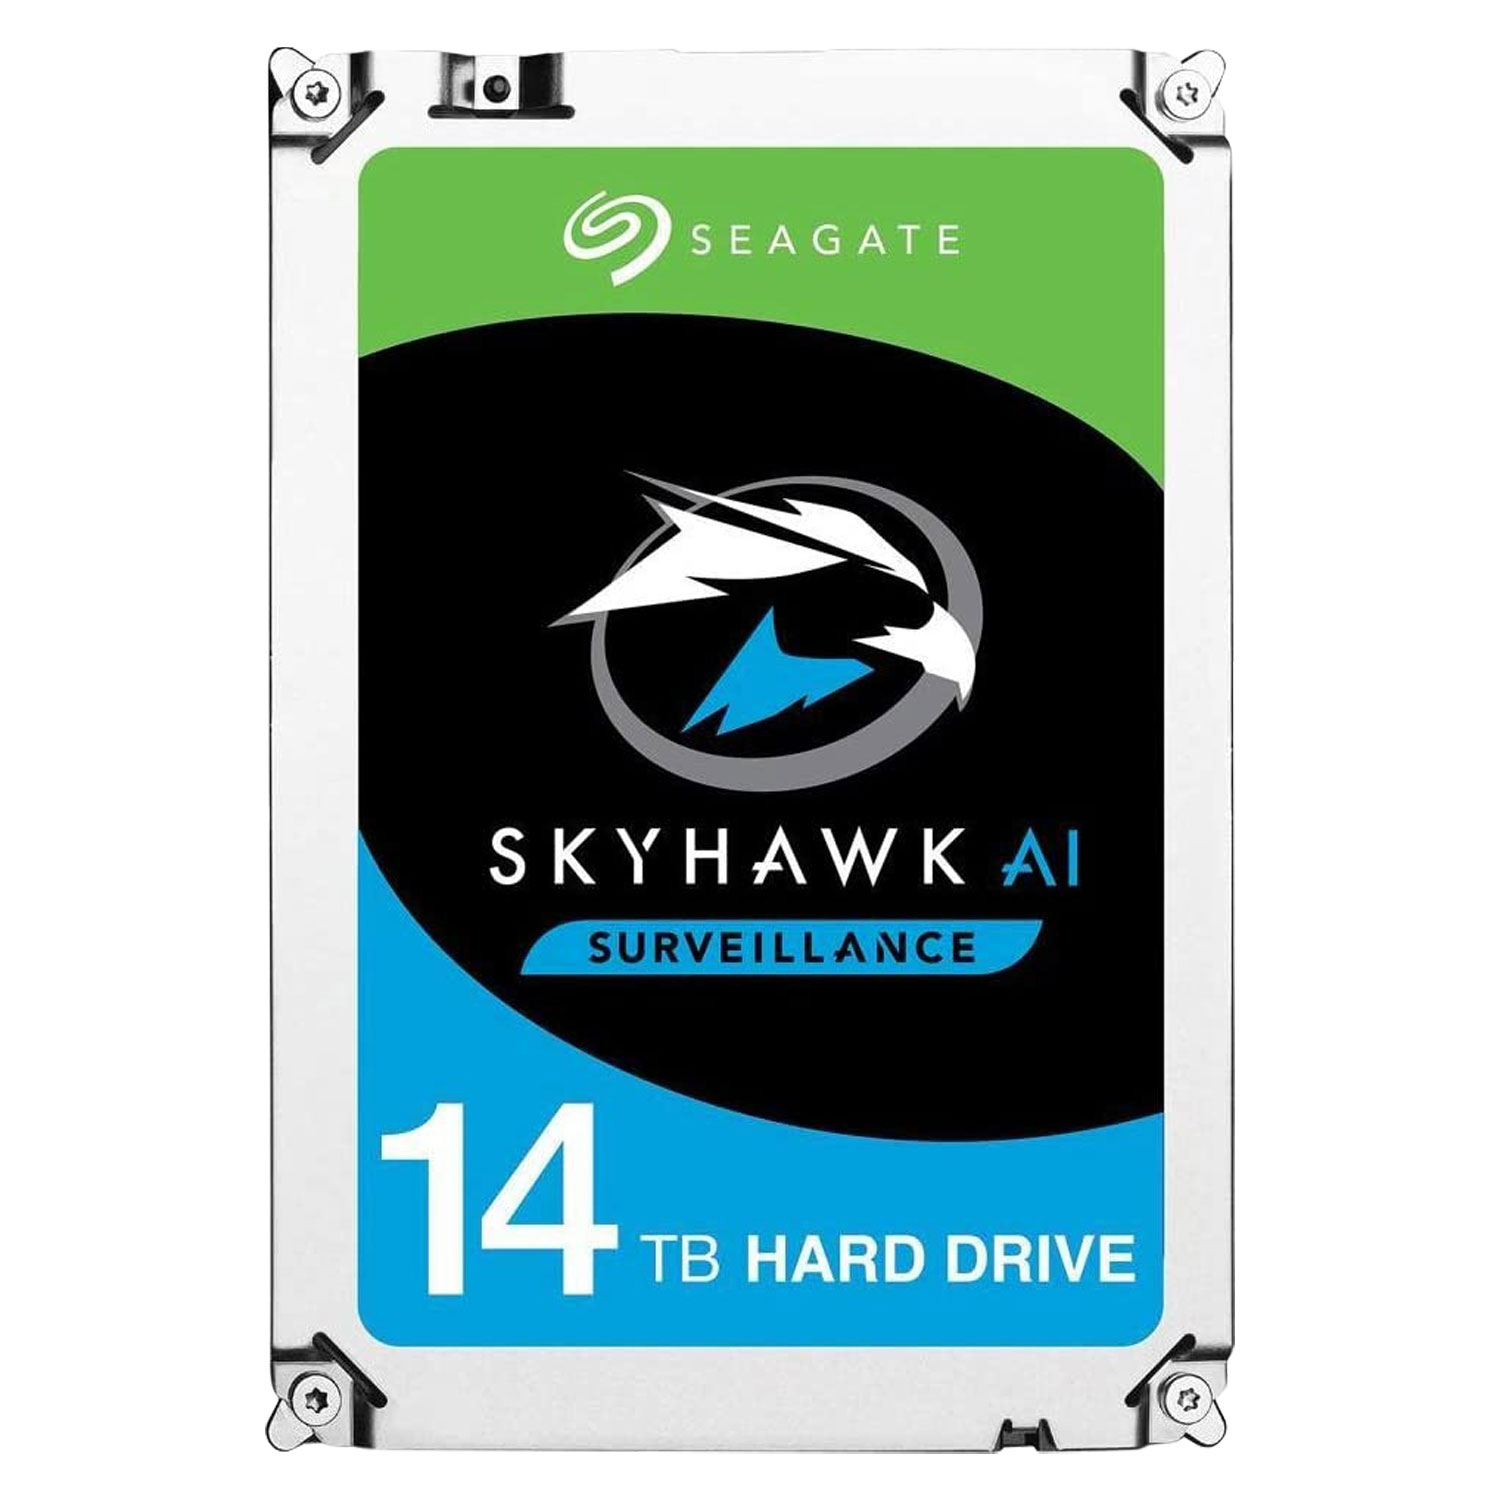 HD Seagate Skyhawk AI Surveillance 14TB / SATA3  - (ST14000VE008 )
